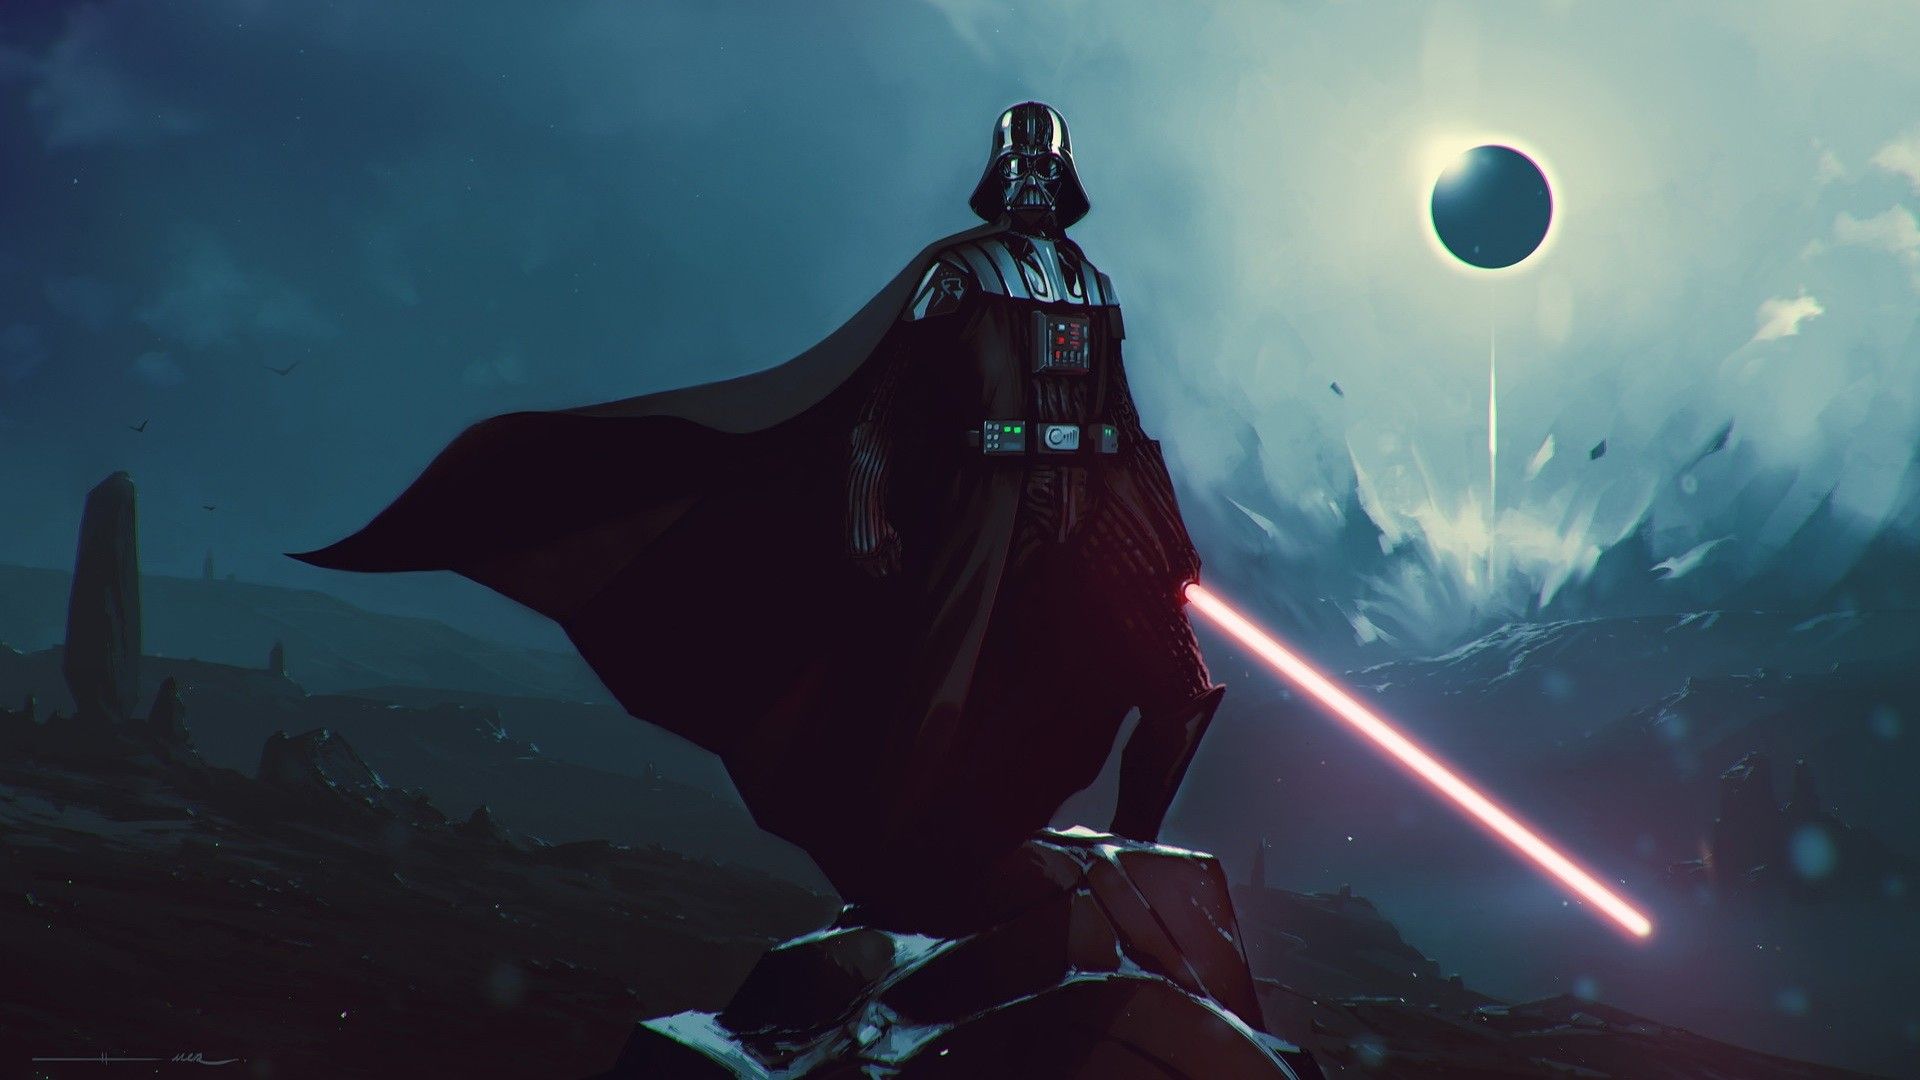 Darth Vader Wallpaper: Image